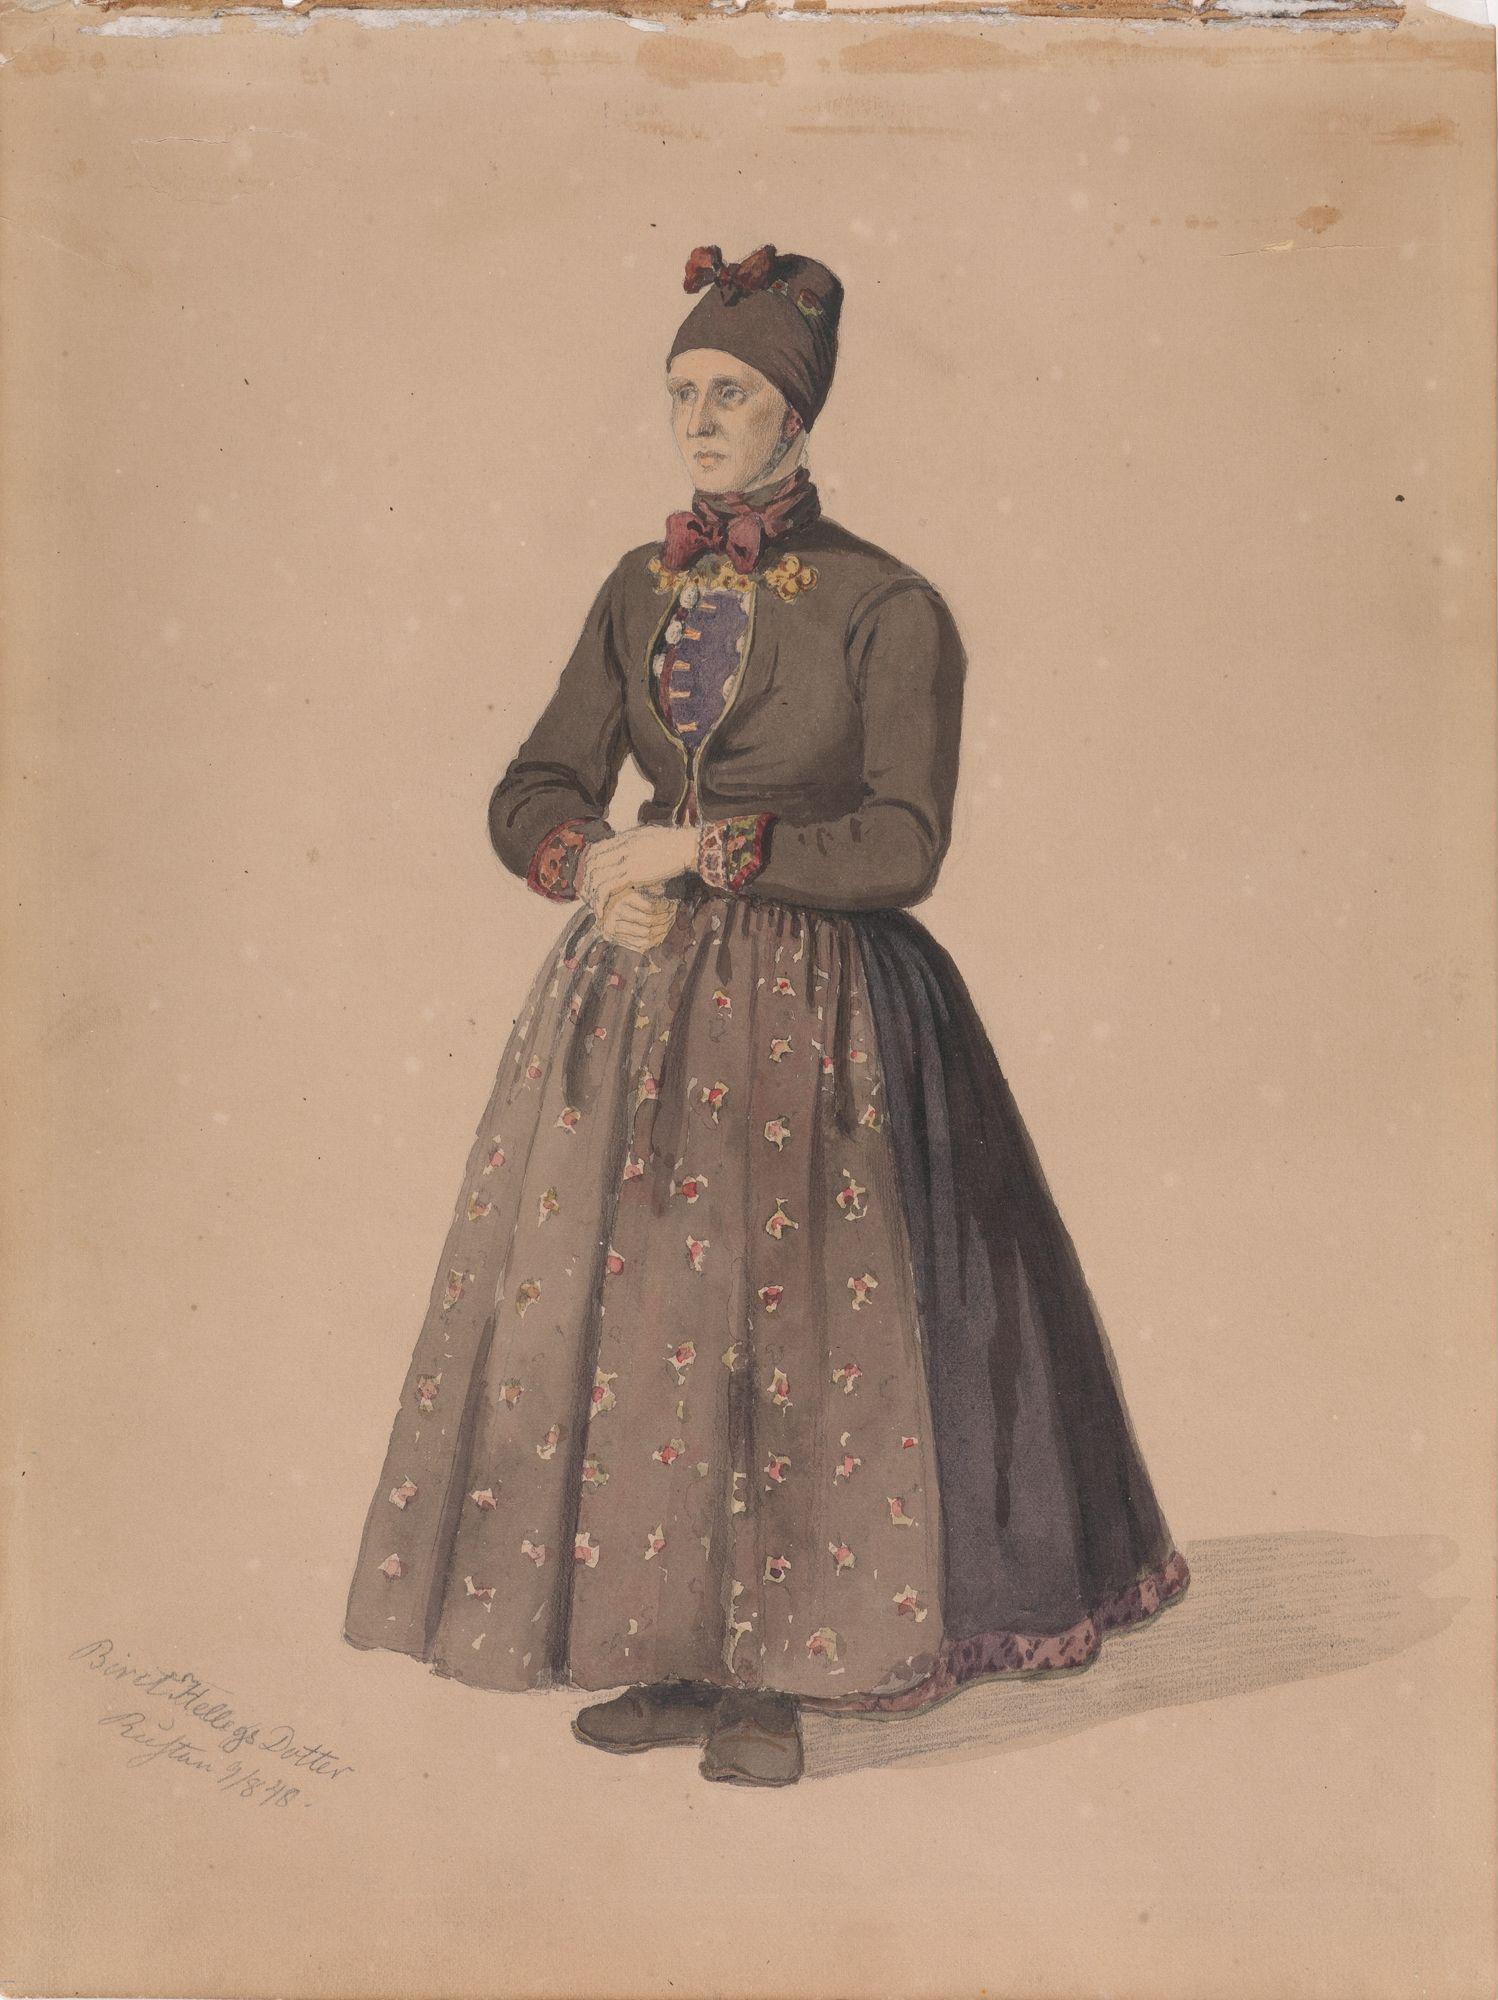 Biret Hellegsdotter, Rustan, Flesberg (Adolph Tidemand, 1848) Nasjonalmuseet. Lisens: Fri bruk (Creative Commons - Attribution CC-BY)